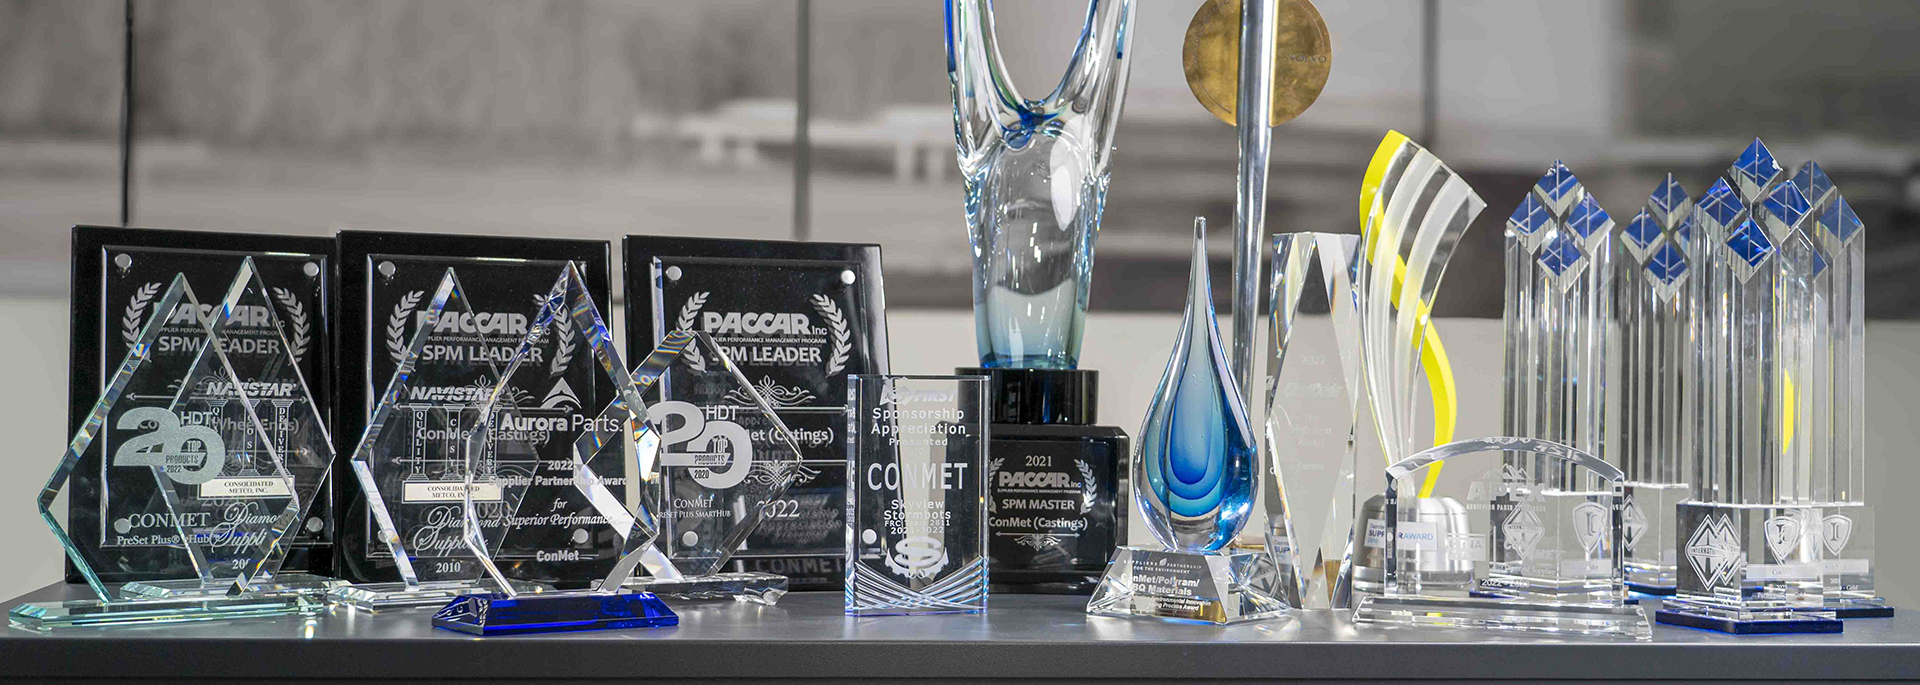 康迈荣获的各种行业产品和质量奖项奖杯摆满了整个柜台